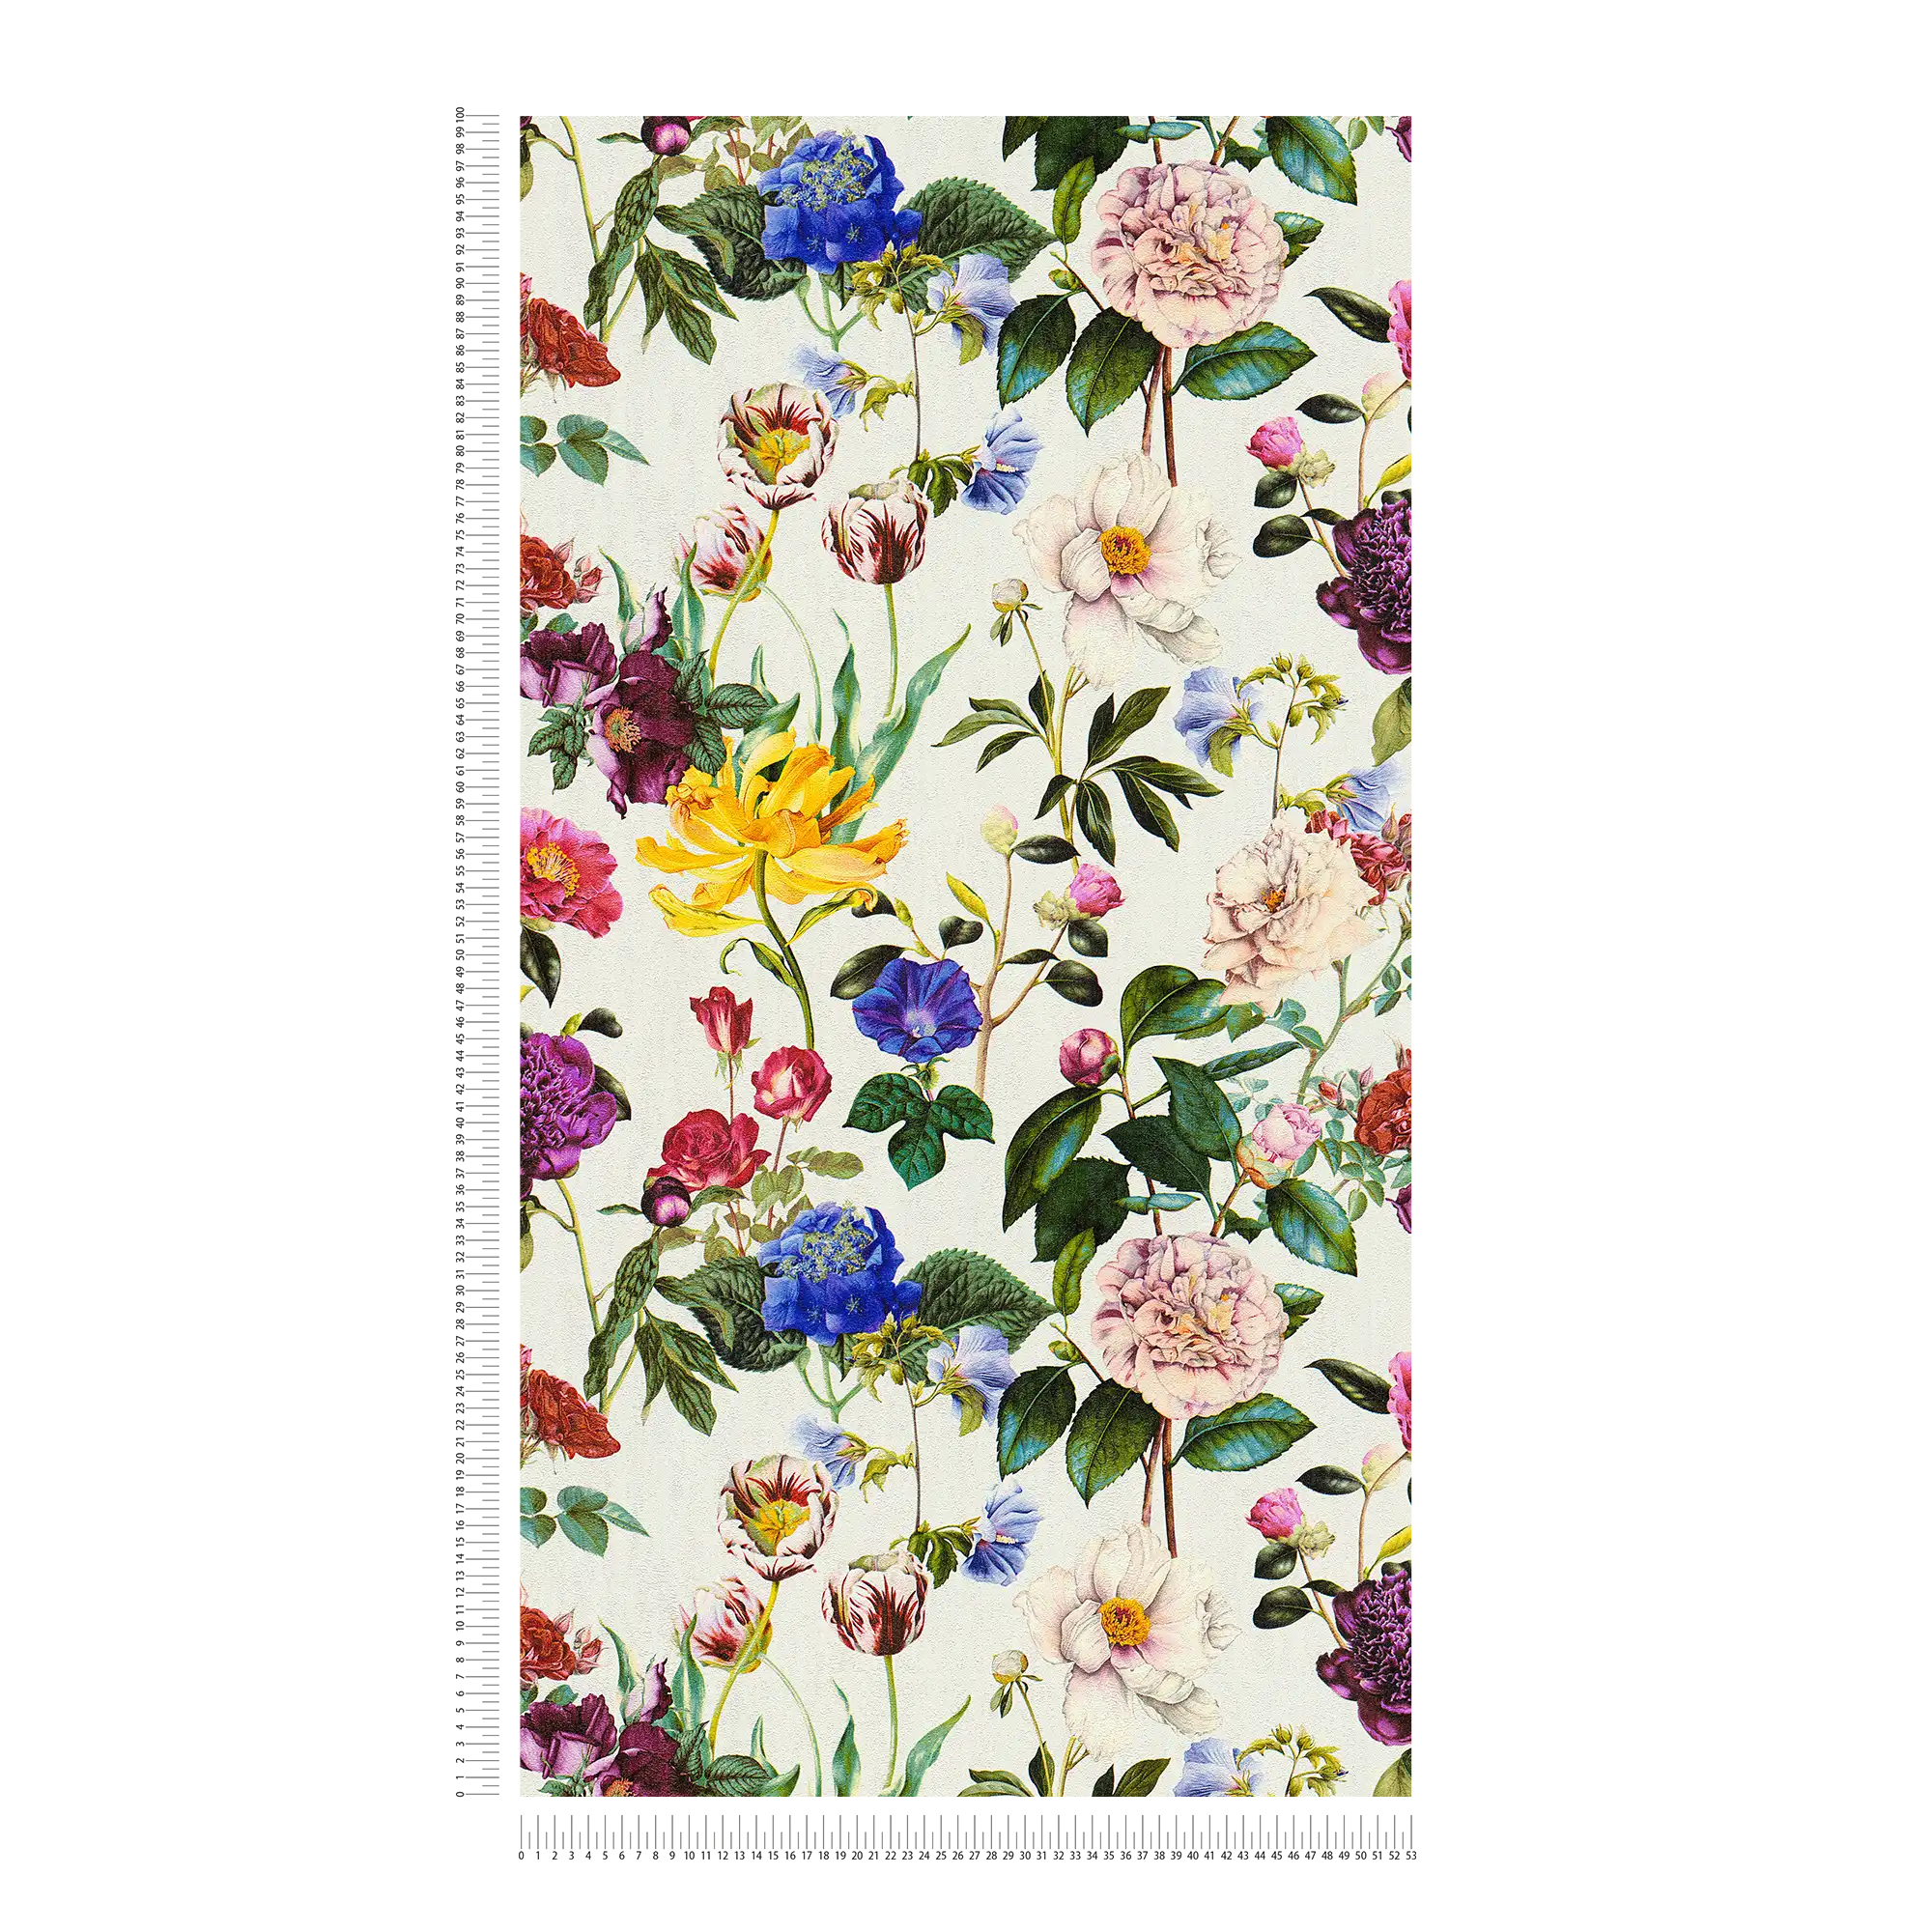             Papier peint fleuri avec des fleurs aux couleurs vives - multicolore, vert, gris
        